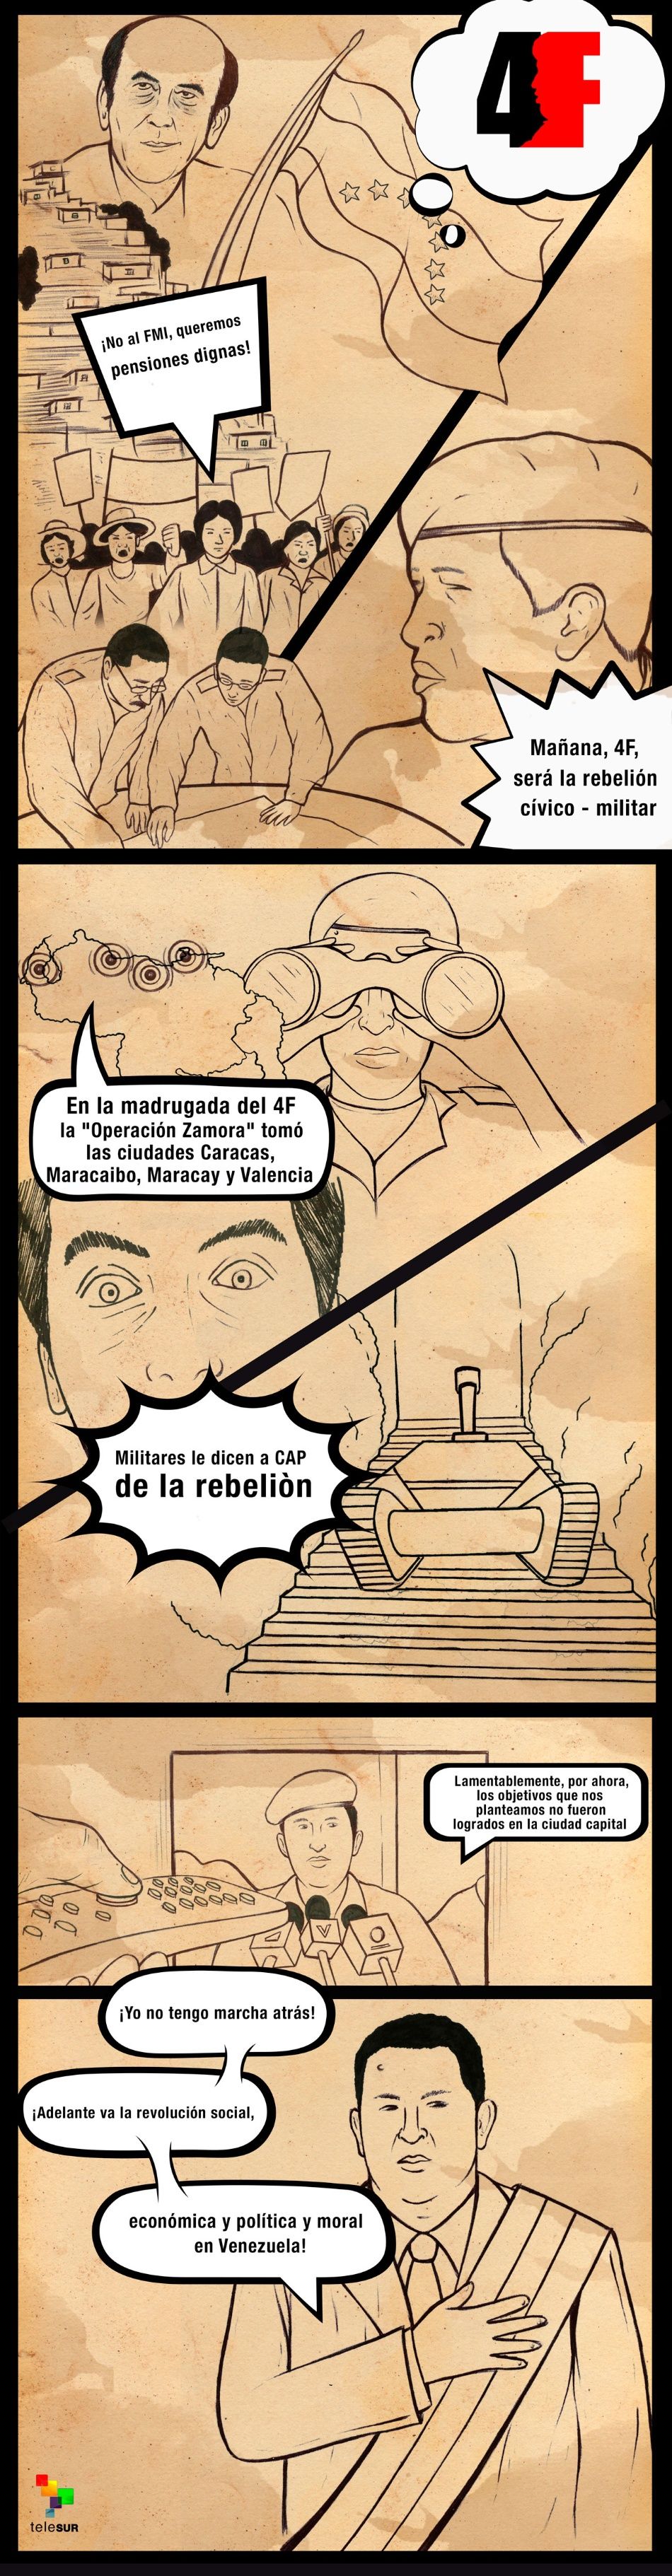 En historieta: La rebelión cívico-militar del 4F en Venezuela